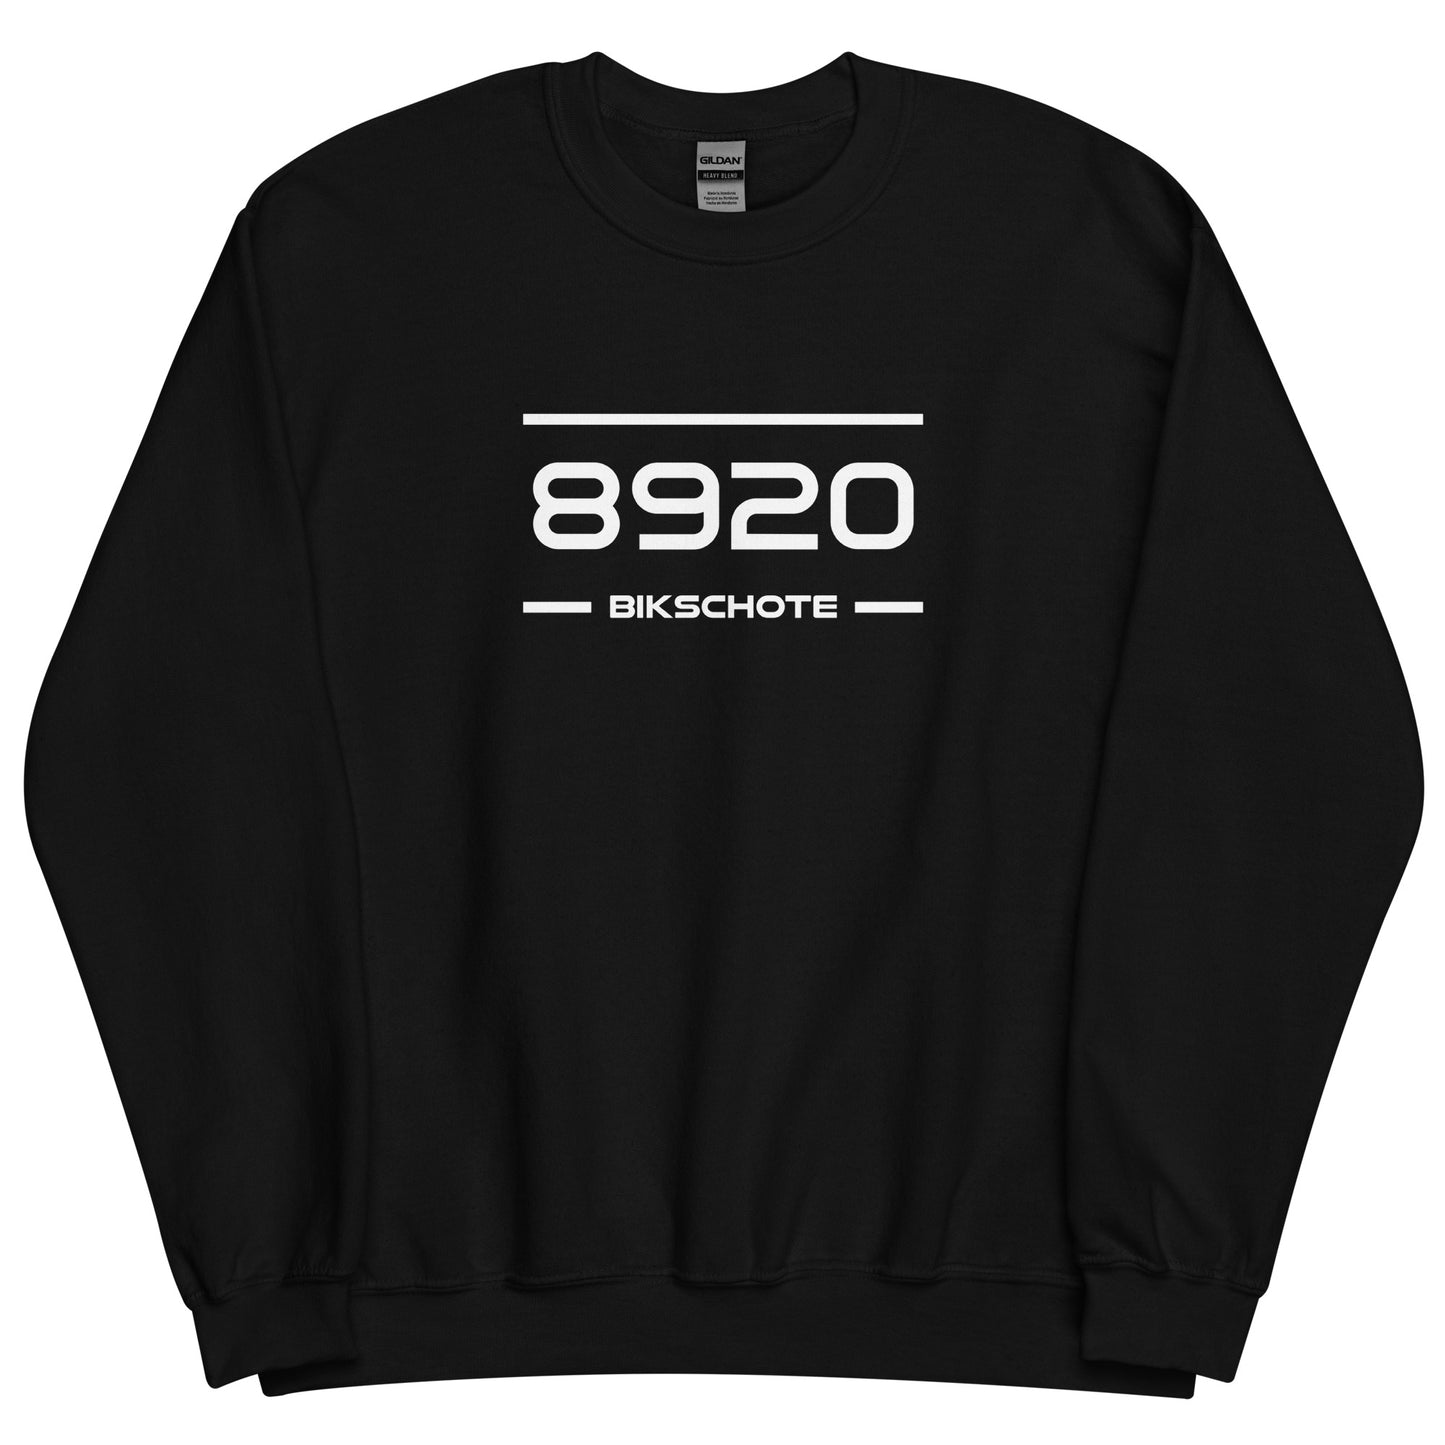 Sweater - 8920 - Bikschote (M/V)